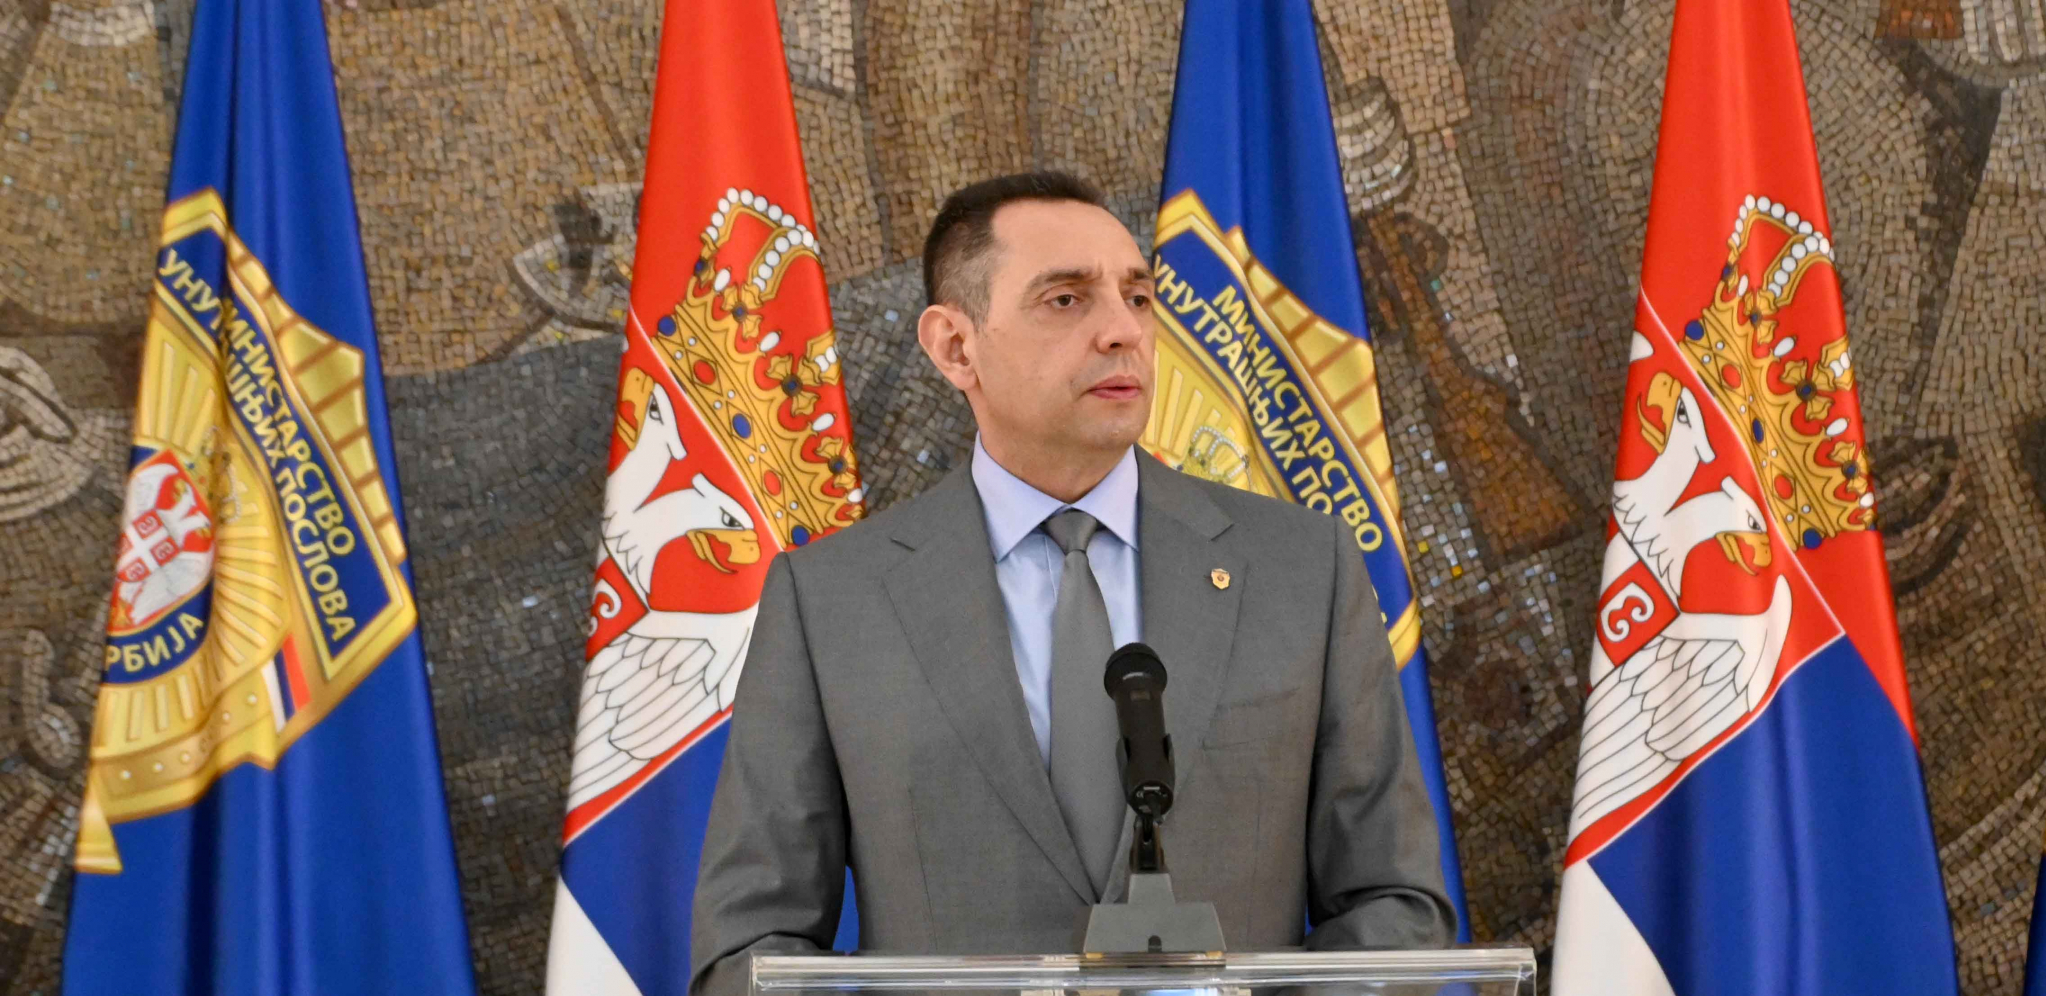 OGLASIO SE MINISTAR VULIN: "Čestitam predsedniku Vučiću što je pred G7 branio integritet svih zemalja"